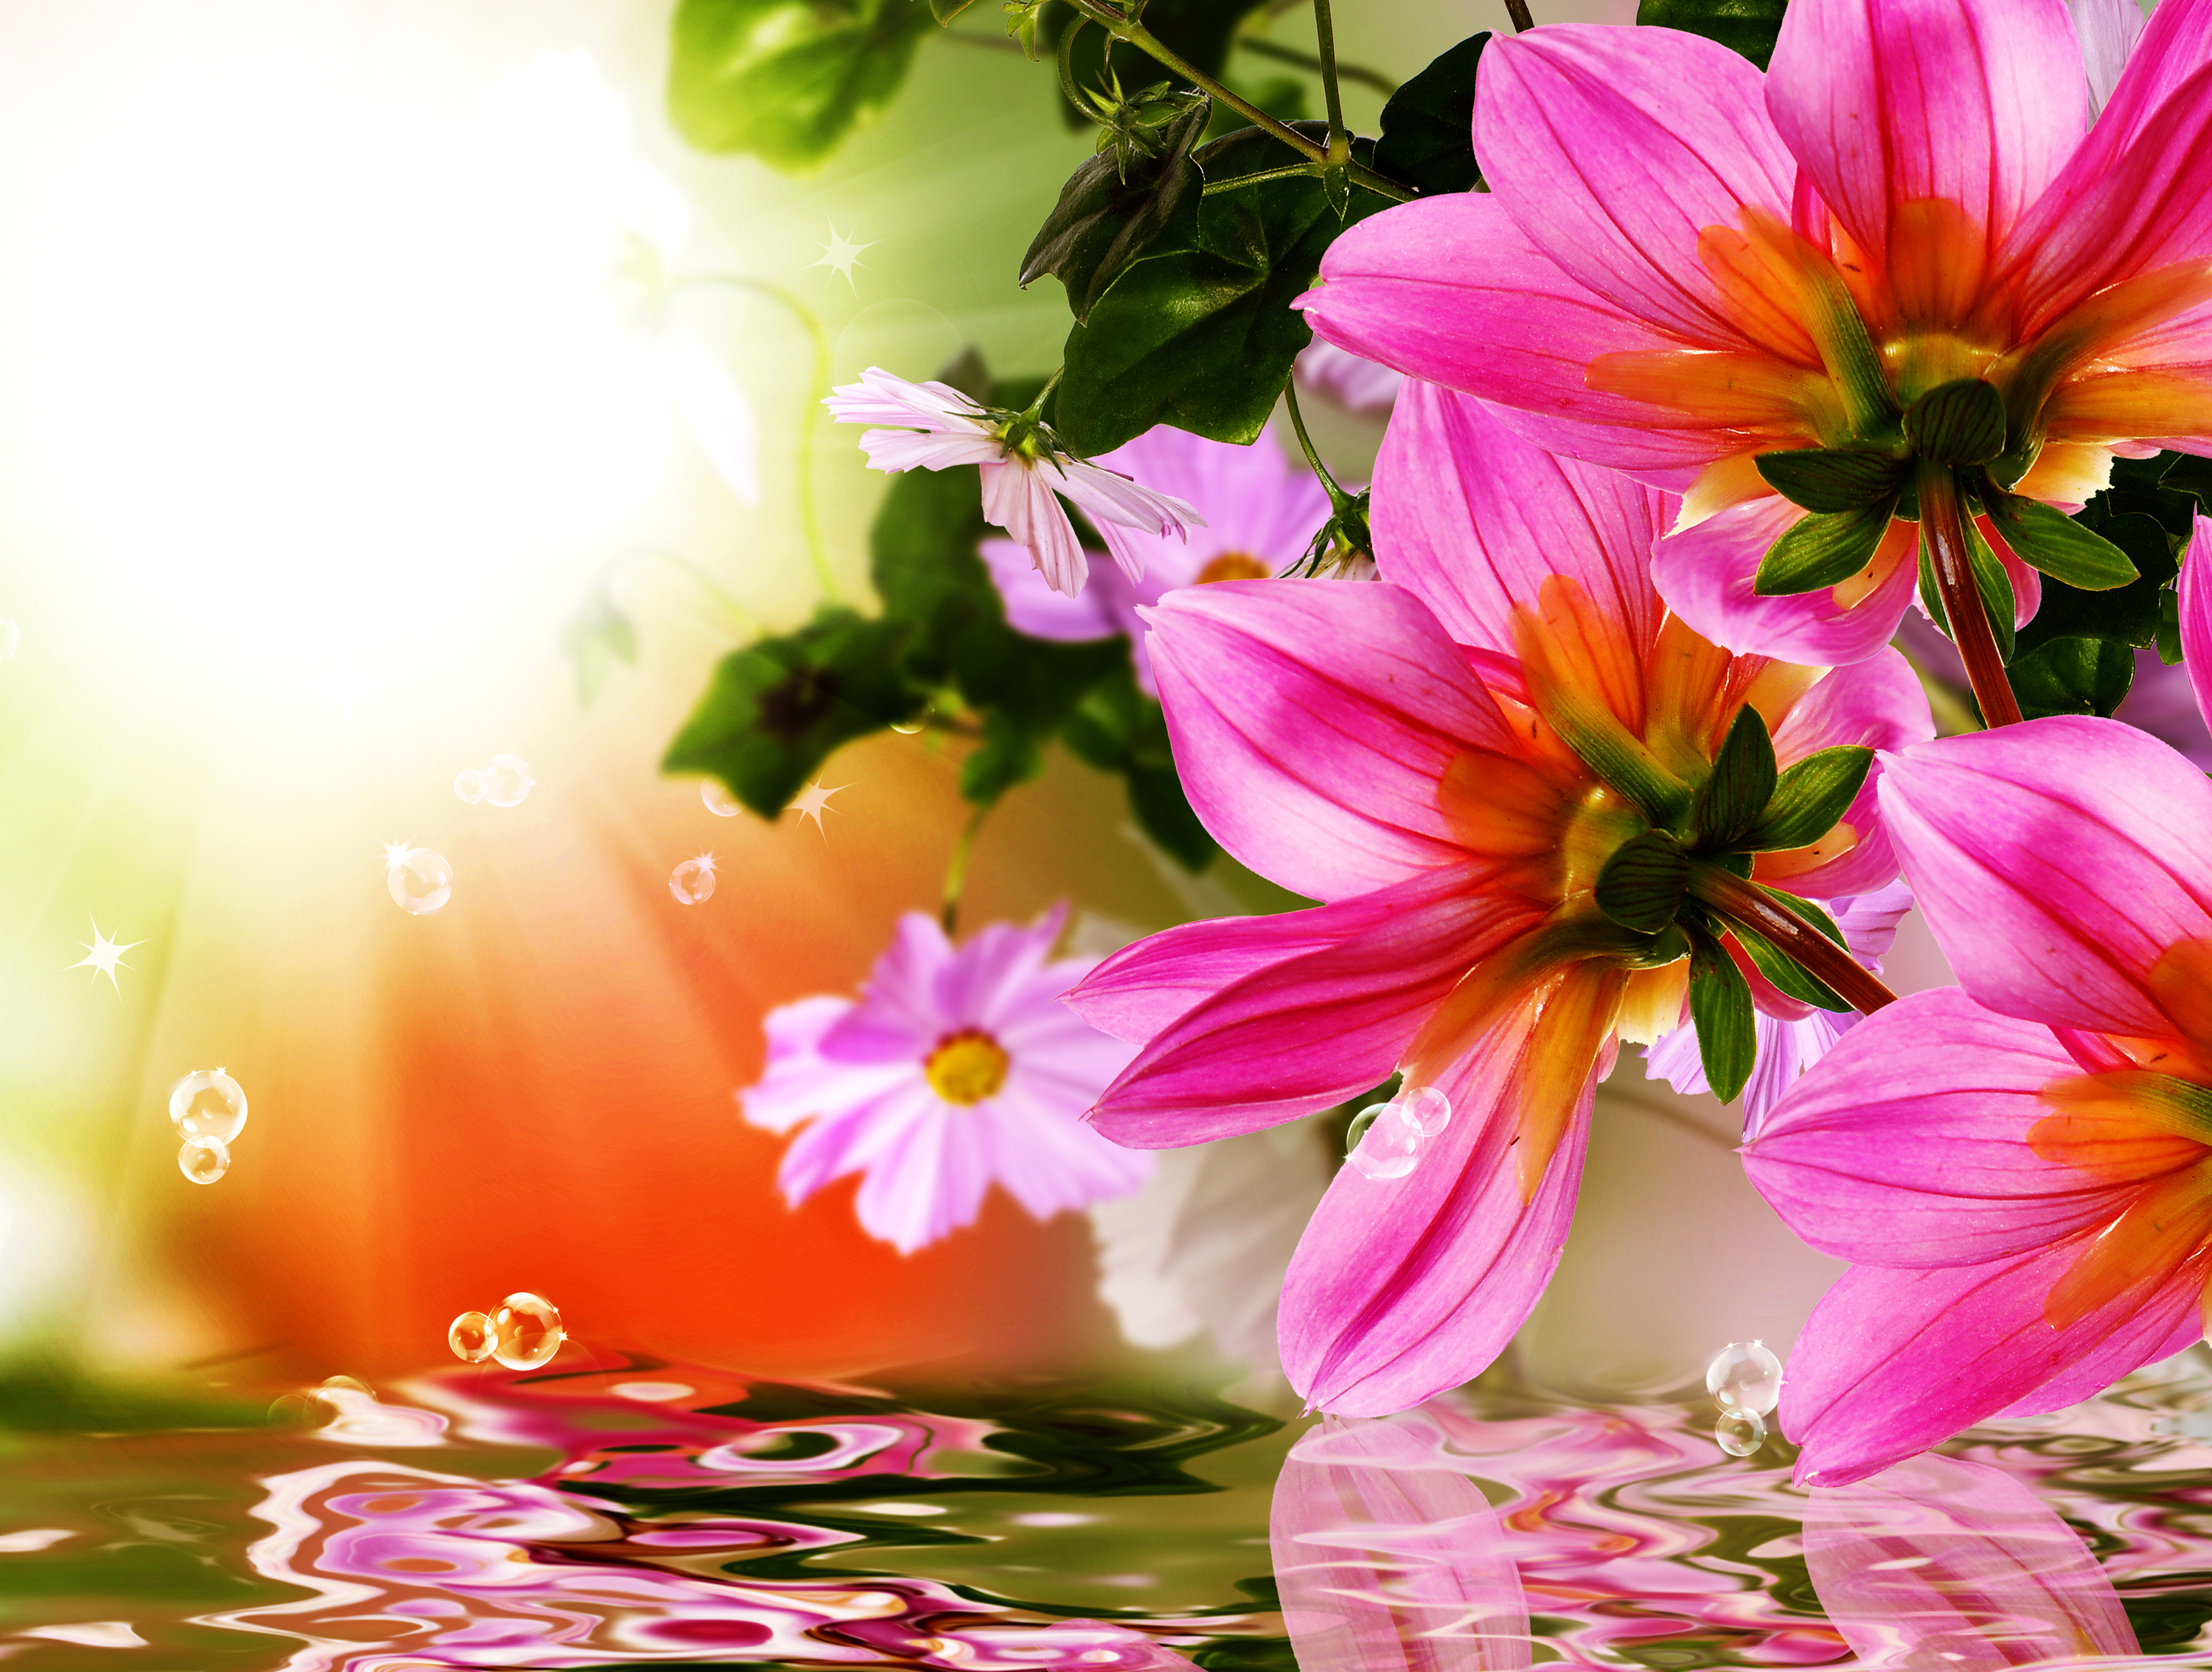 Скачать обои бесплатно Вода, Отражение, Цветок, Коллаж, Весна, Художественные, Розовый Цветок картинка на рабочий стол ПК